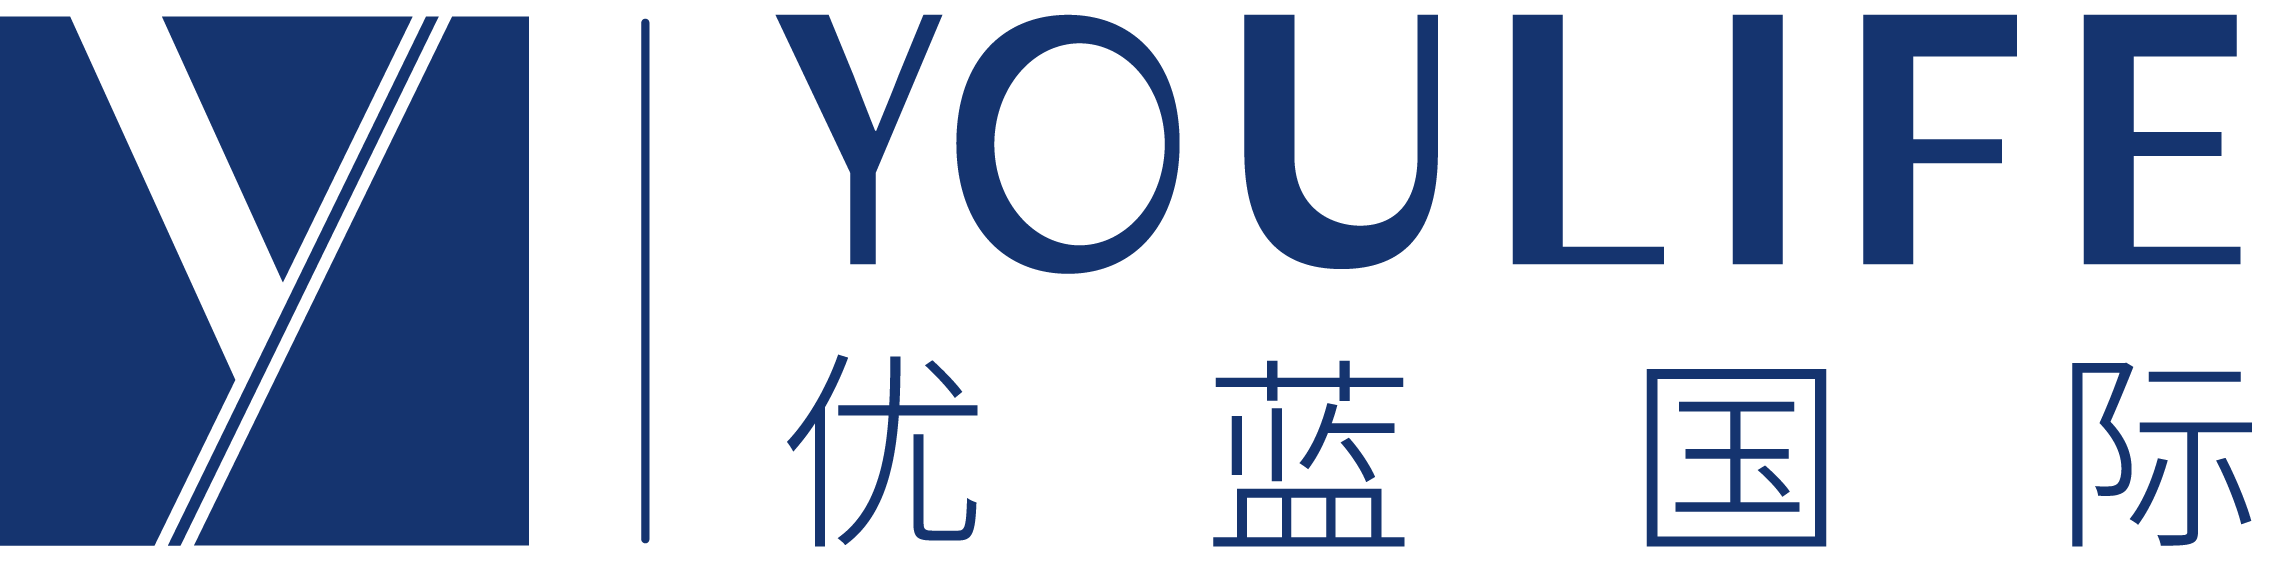 【会员风采】我会会员——上海优尔蓝信息科技有限公司深圳分公司